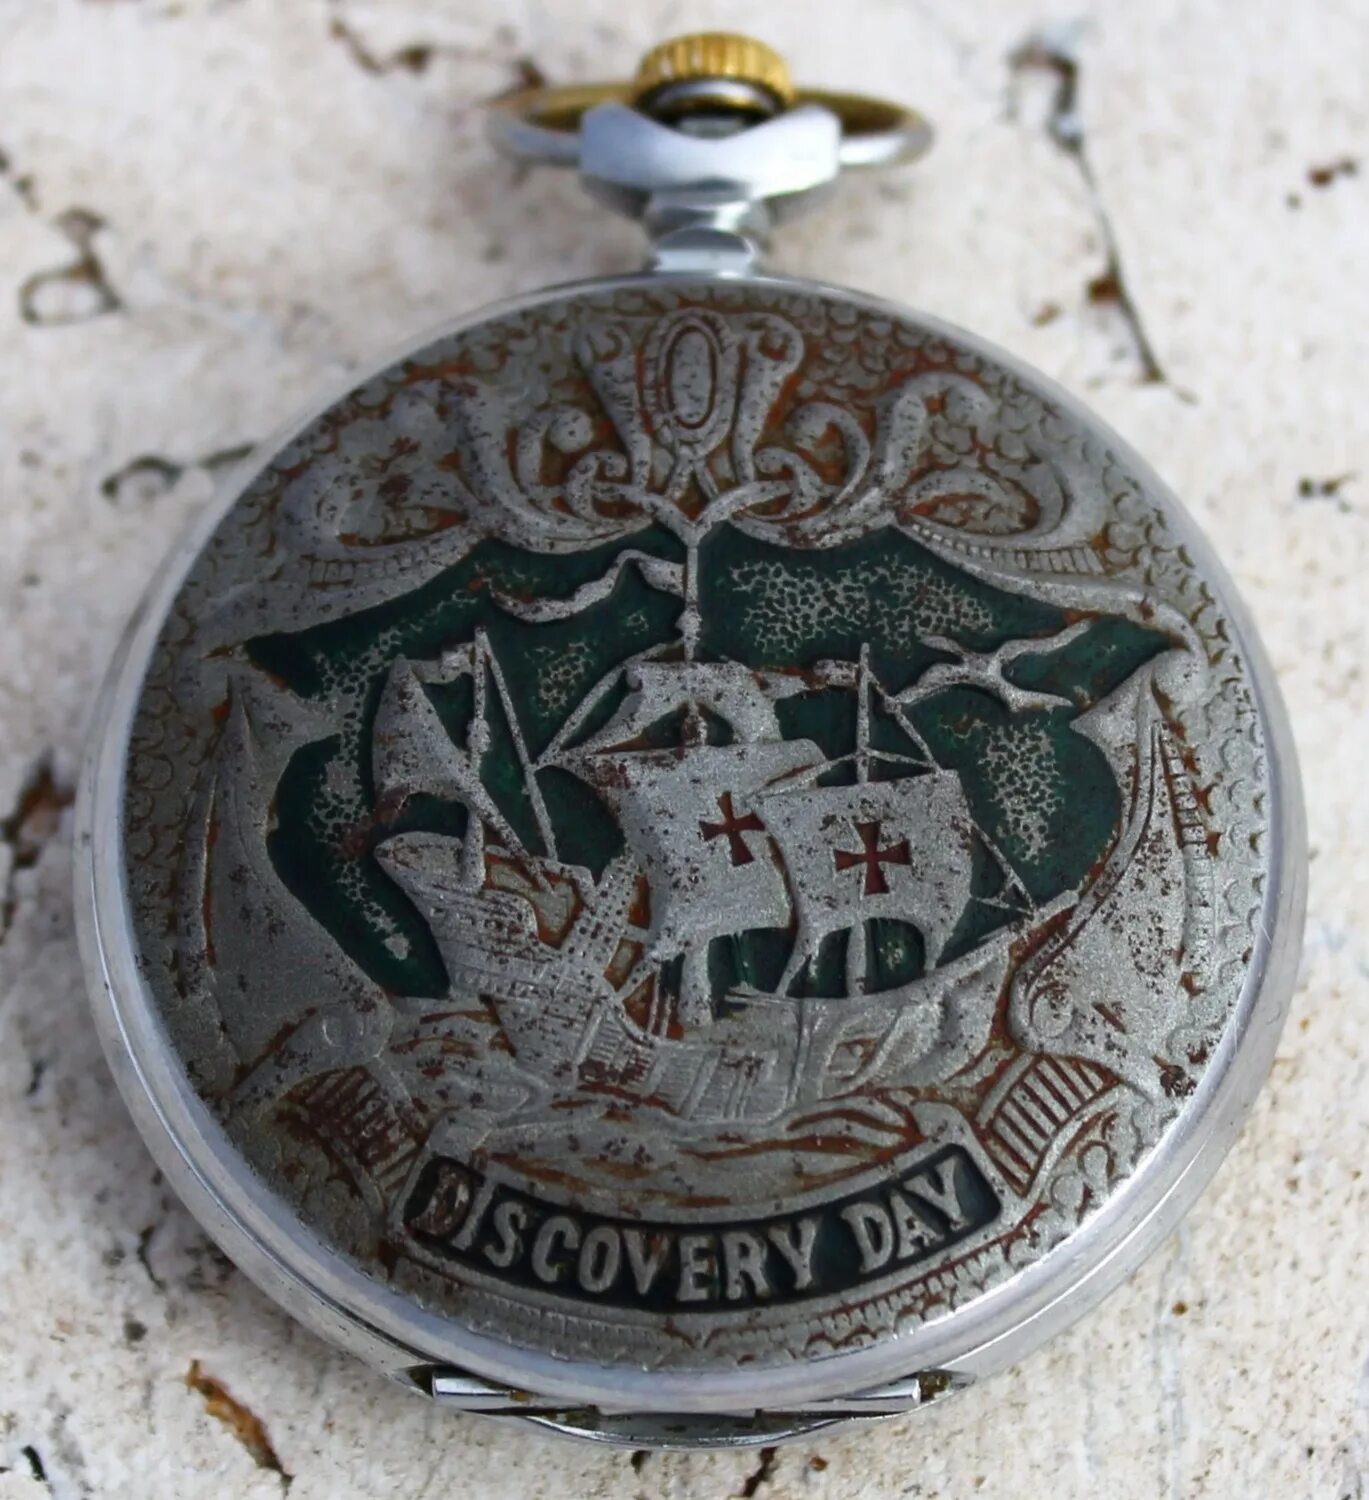 Карманные часы молния Дискавери дей. Часы карманные Discovery Day. Часы молния Discovery Day. Часы молния на цепочке СССР. Часы дискавери